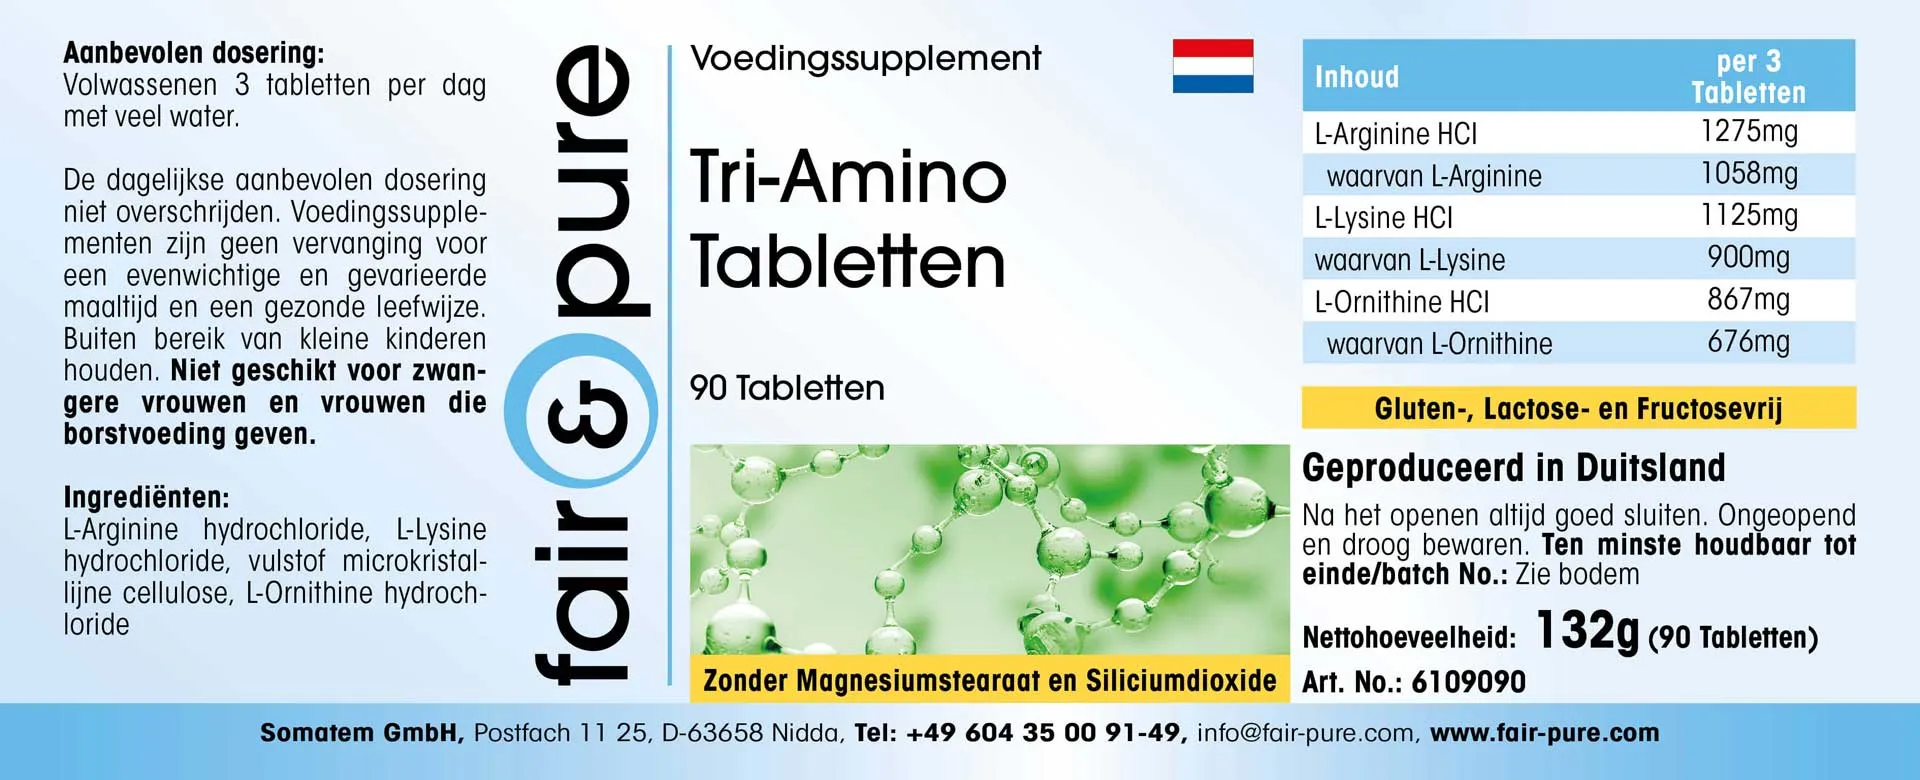 Tri-Amino-Tabletten